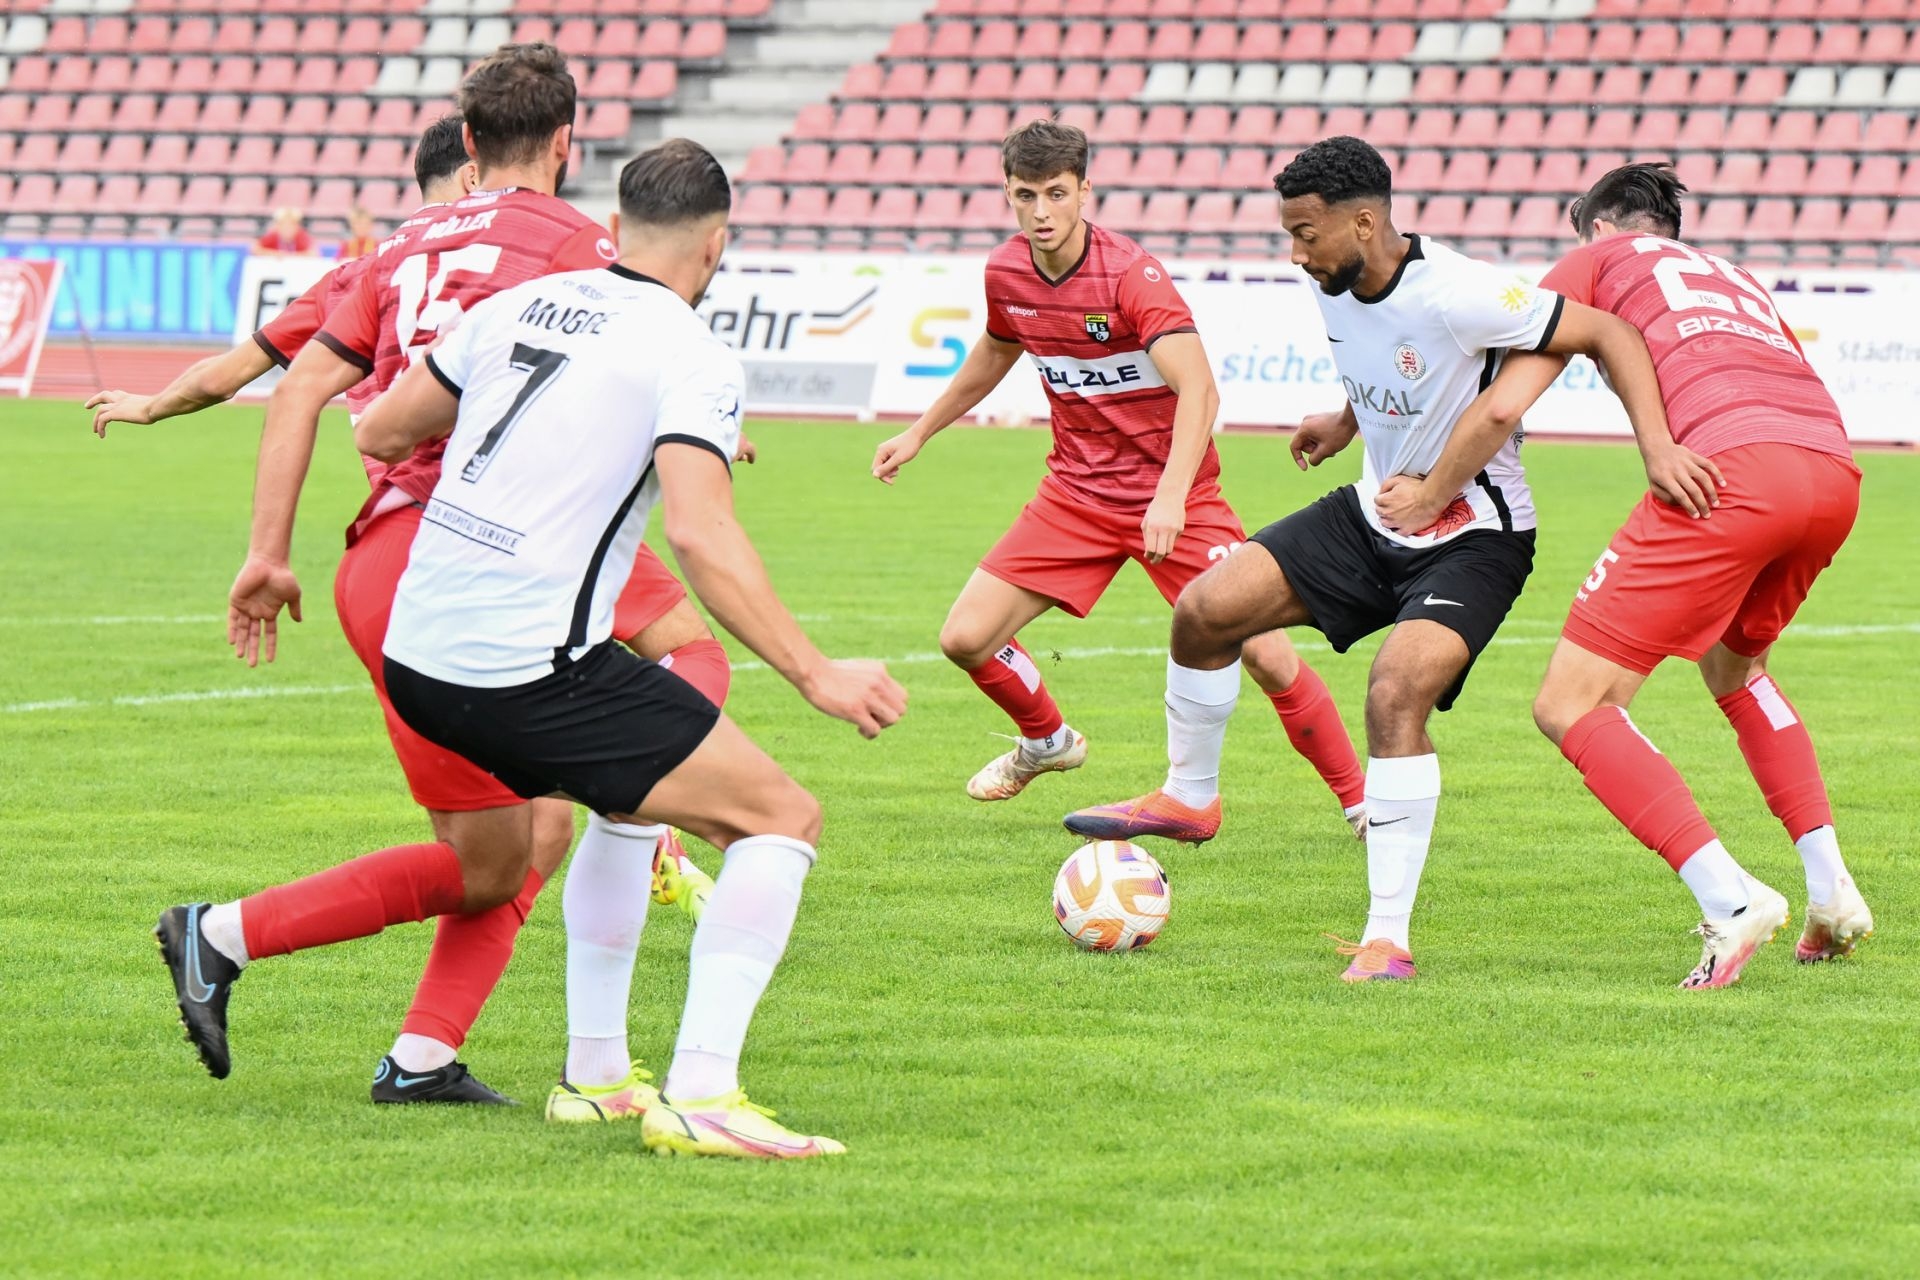 Saison 2022/23, KSV Hessen Kassel, TSG Bahlingen, Endstand 1:2